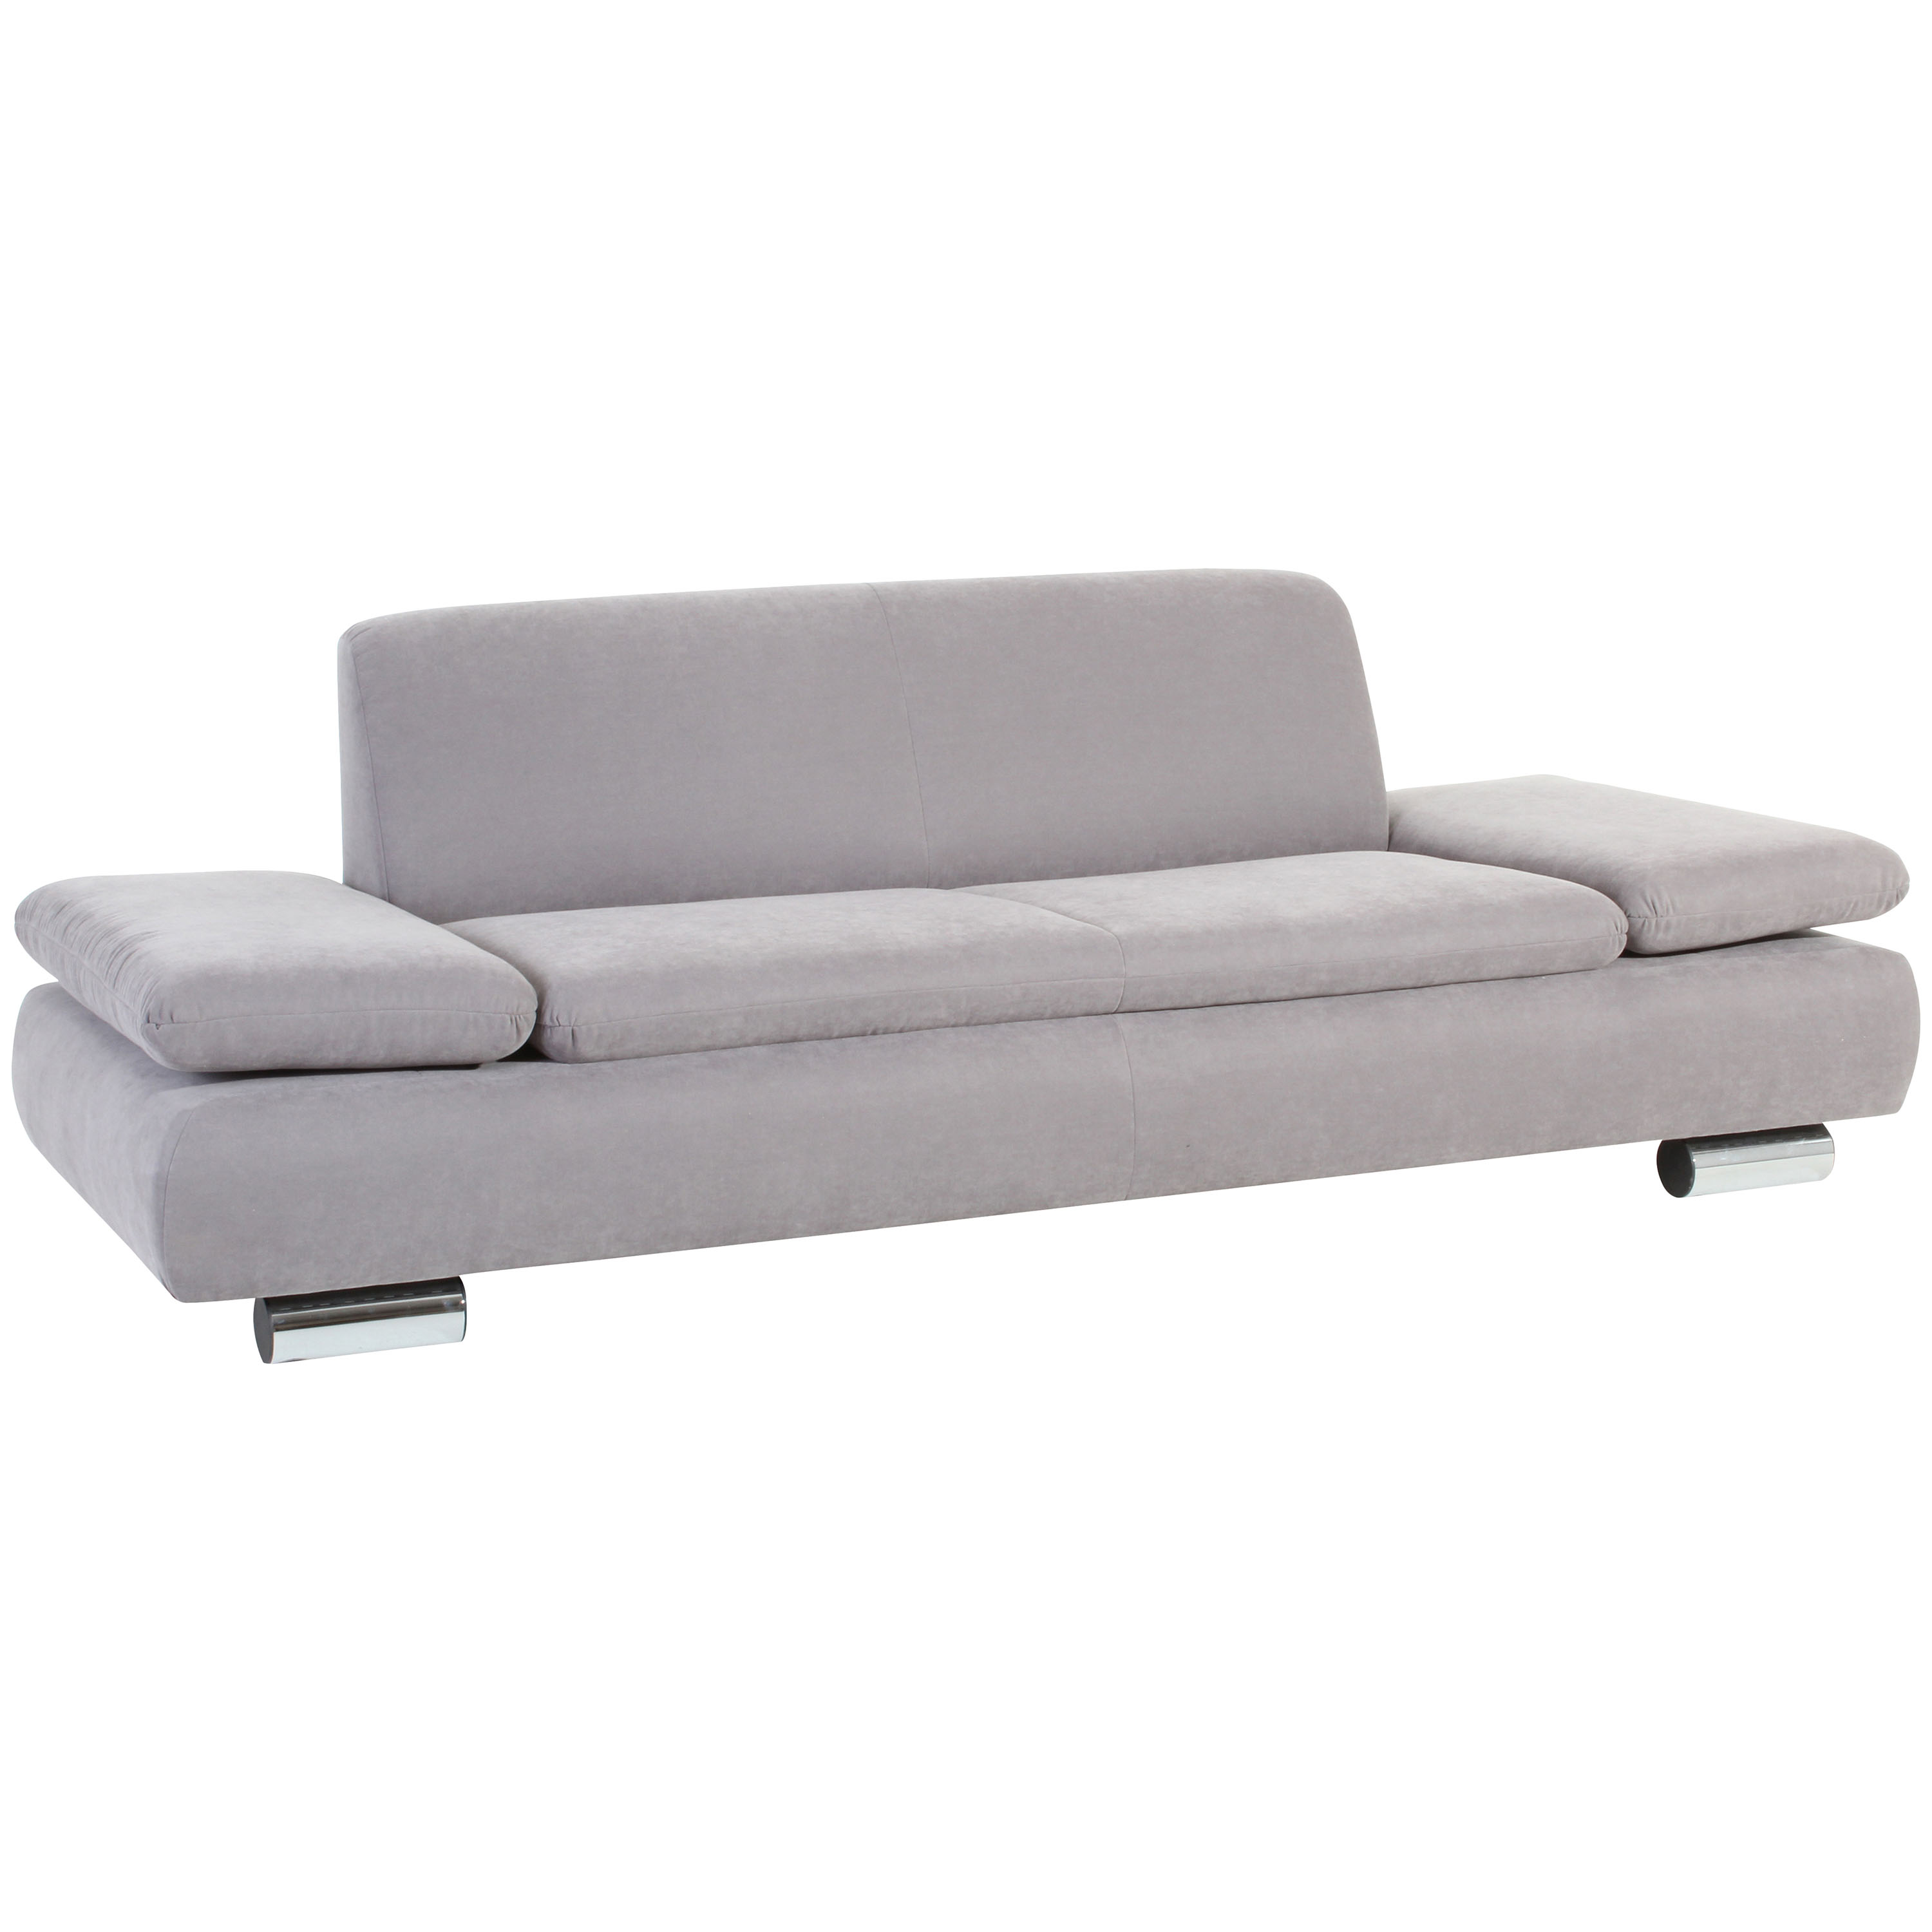 formschönes 2,5-sitzer sofa in silber mit verchromten metallfüssen